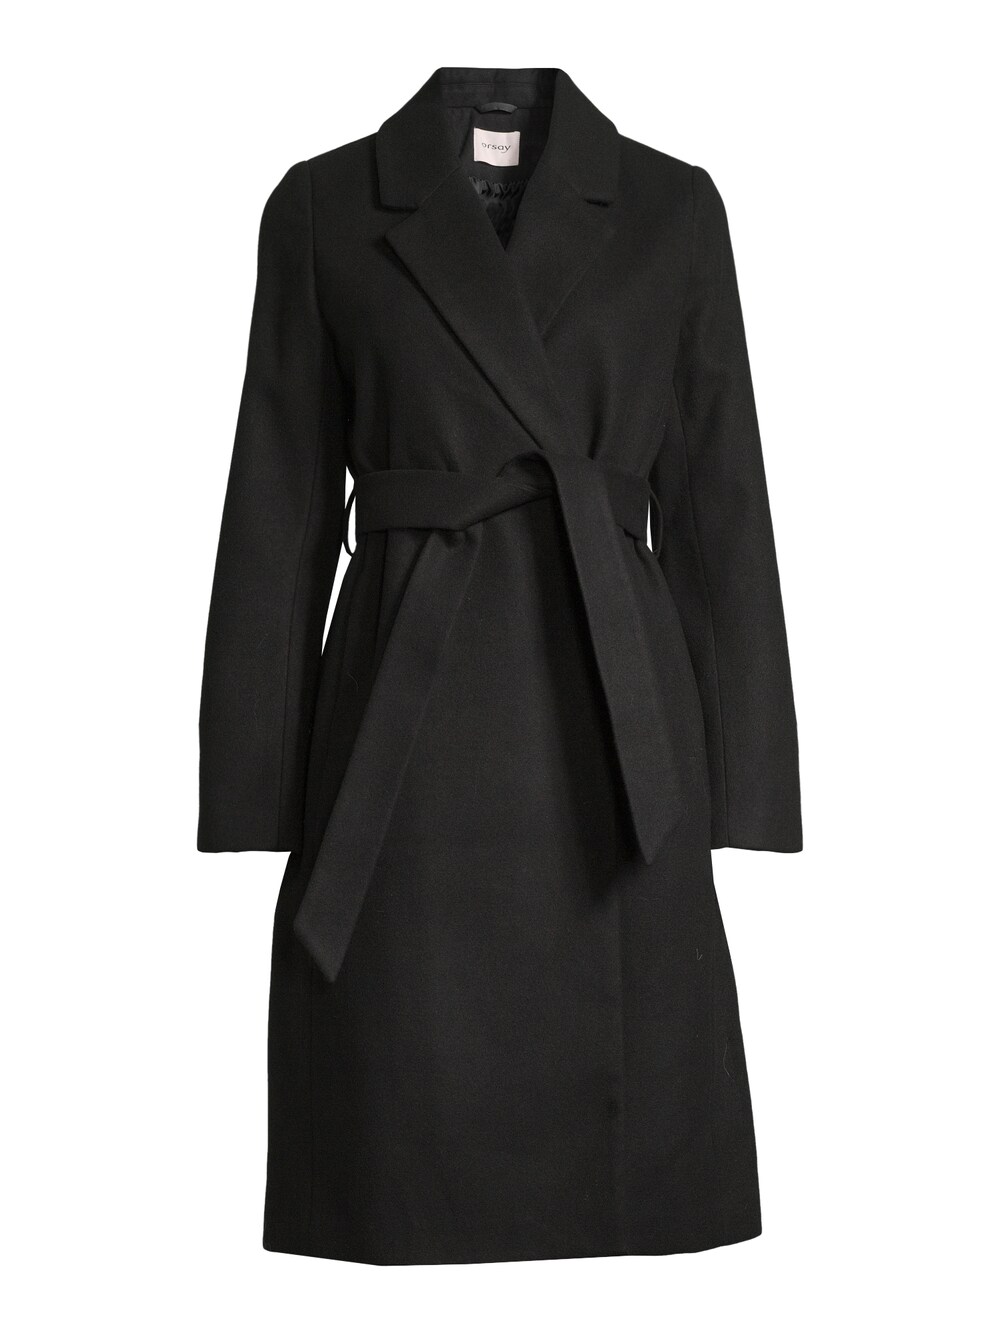 Межсезонное пальто Orsay Haley, черный межсезонное пальто orsay светло серый